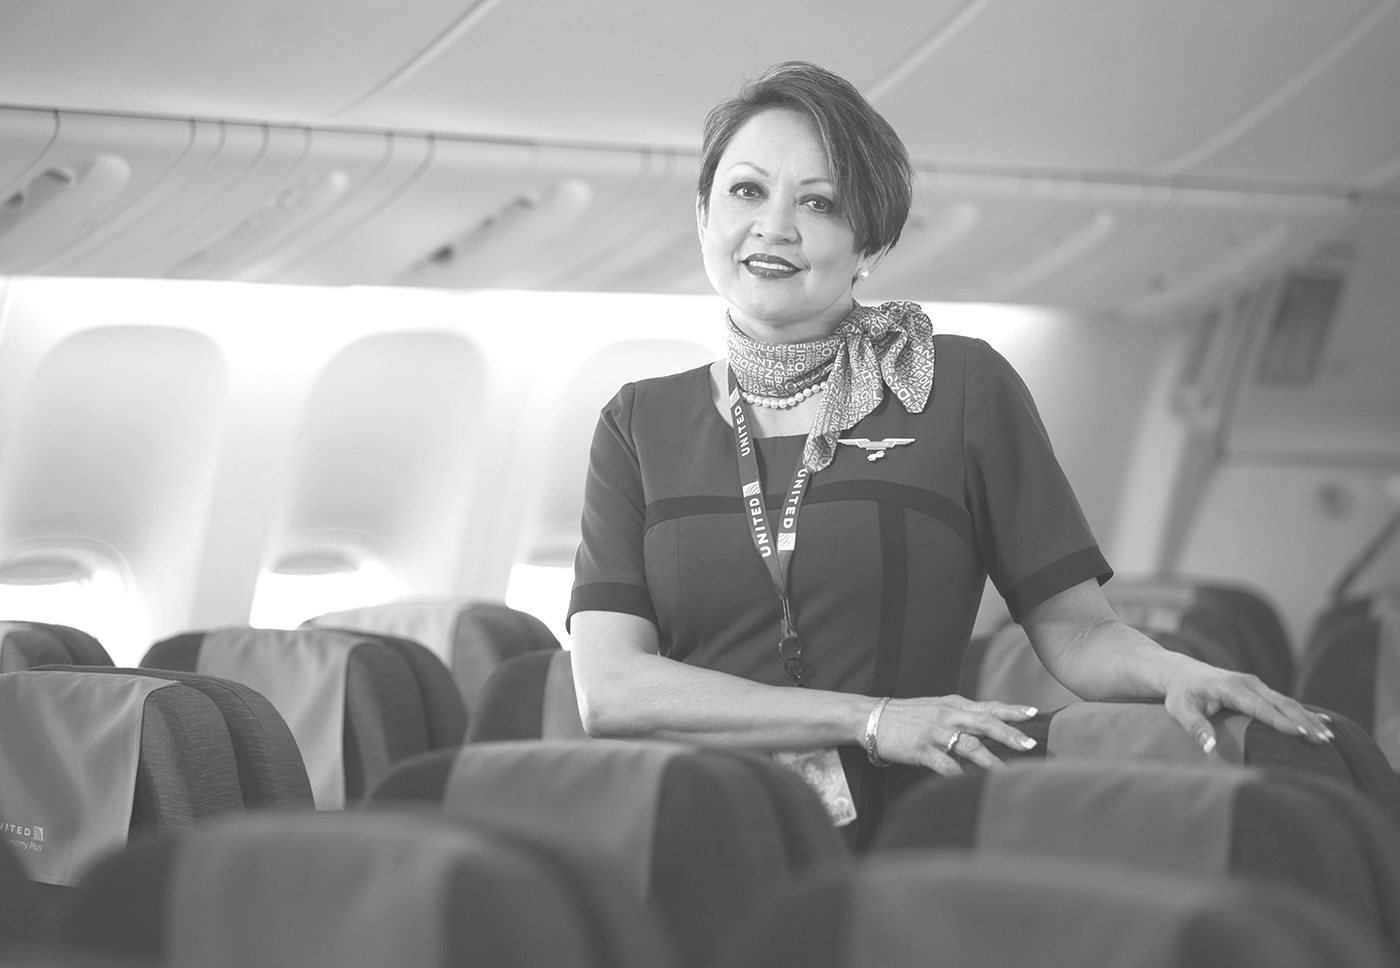 United flight attendants onboard